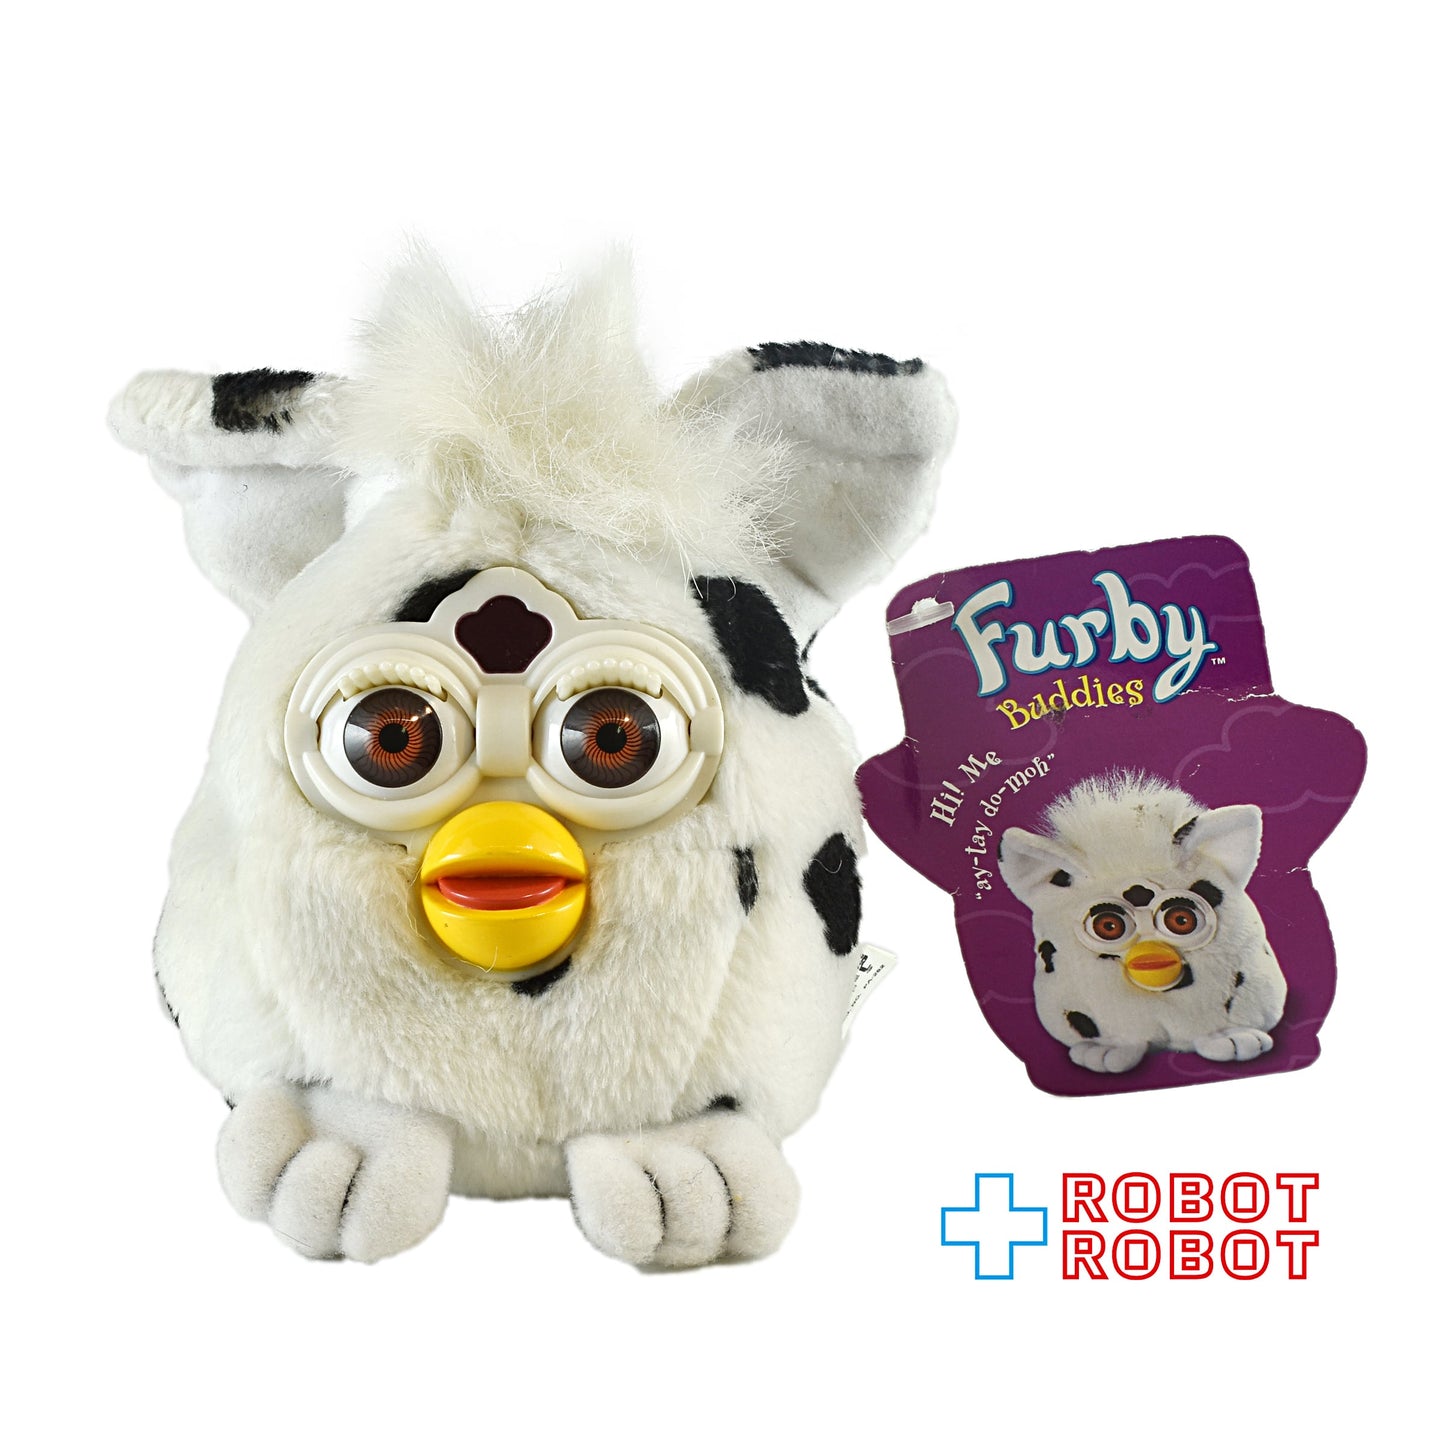 ファービー・バディーズ ハングリープリーズ 紙タグ付 Furby Buddies HUNGRY PLEASE